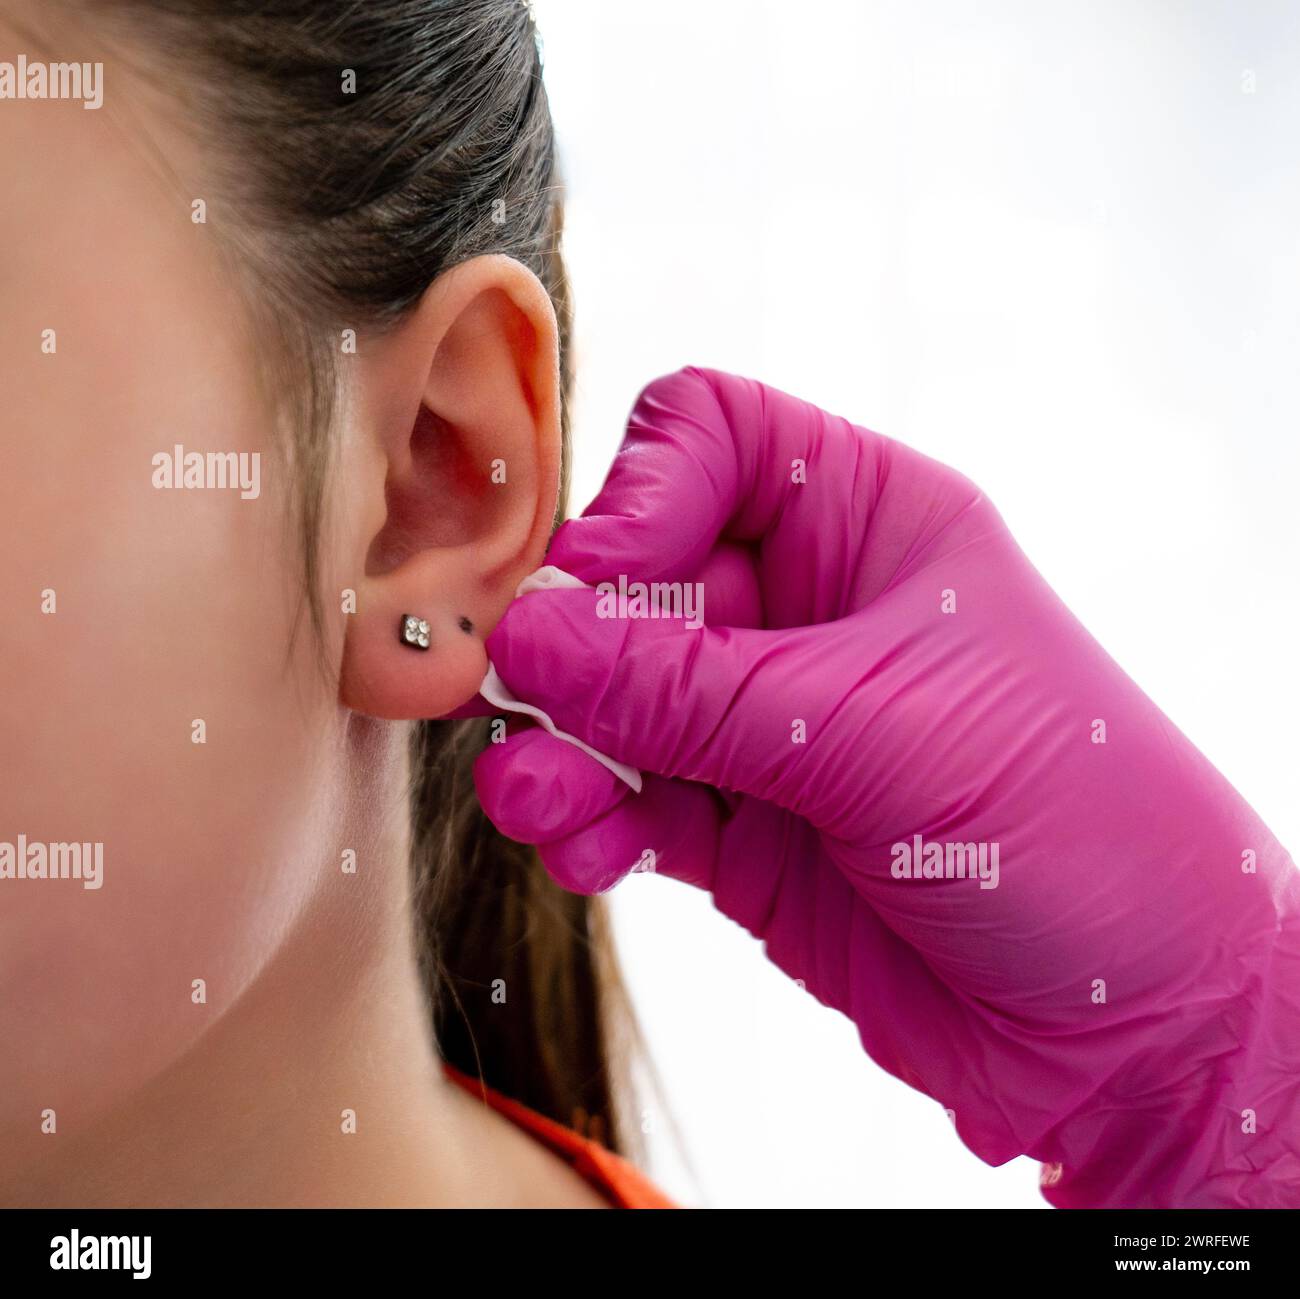 L'orecchio del cliente segnato dal medico professionista attraverso un punto con l'aiuto della penna speciale per perforare in un salone di bellezza. Foto di alta qualità Foto Stock